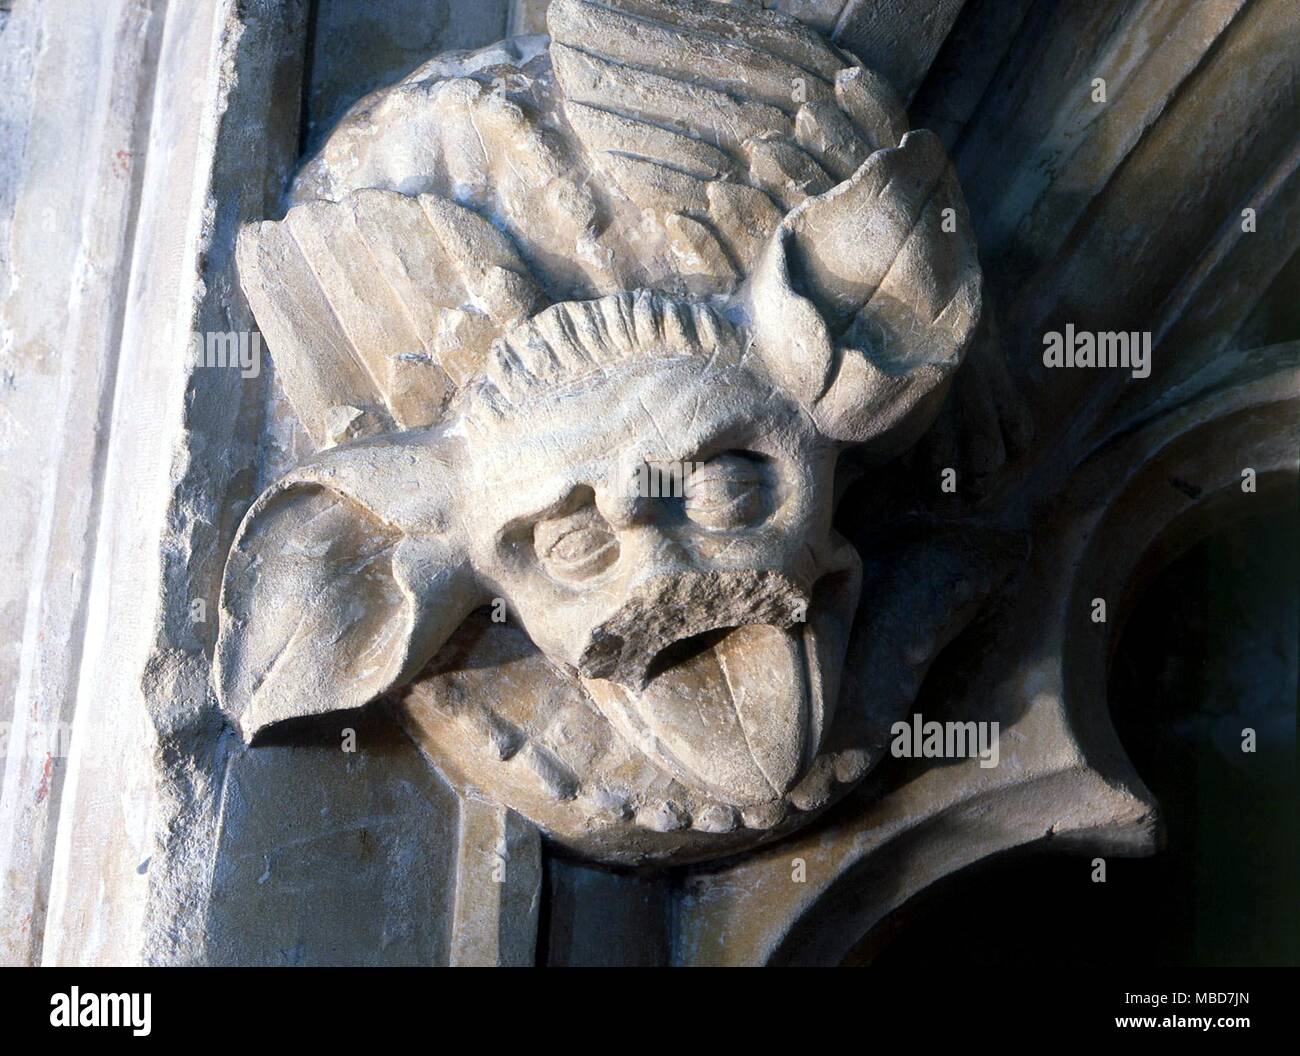 Mostri - WINCHELSEA tra la notevole scultoreo medievale dettagli nella Chiesa Winchelsea, è questa grande-eared grinning volto che è stato certamente influenzato dalle immagini nella letteratura bestiaries. Foto Stock